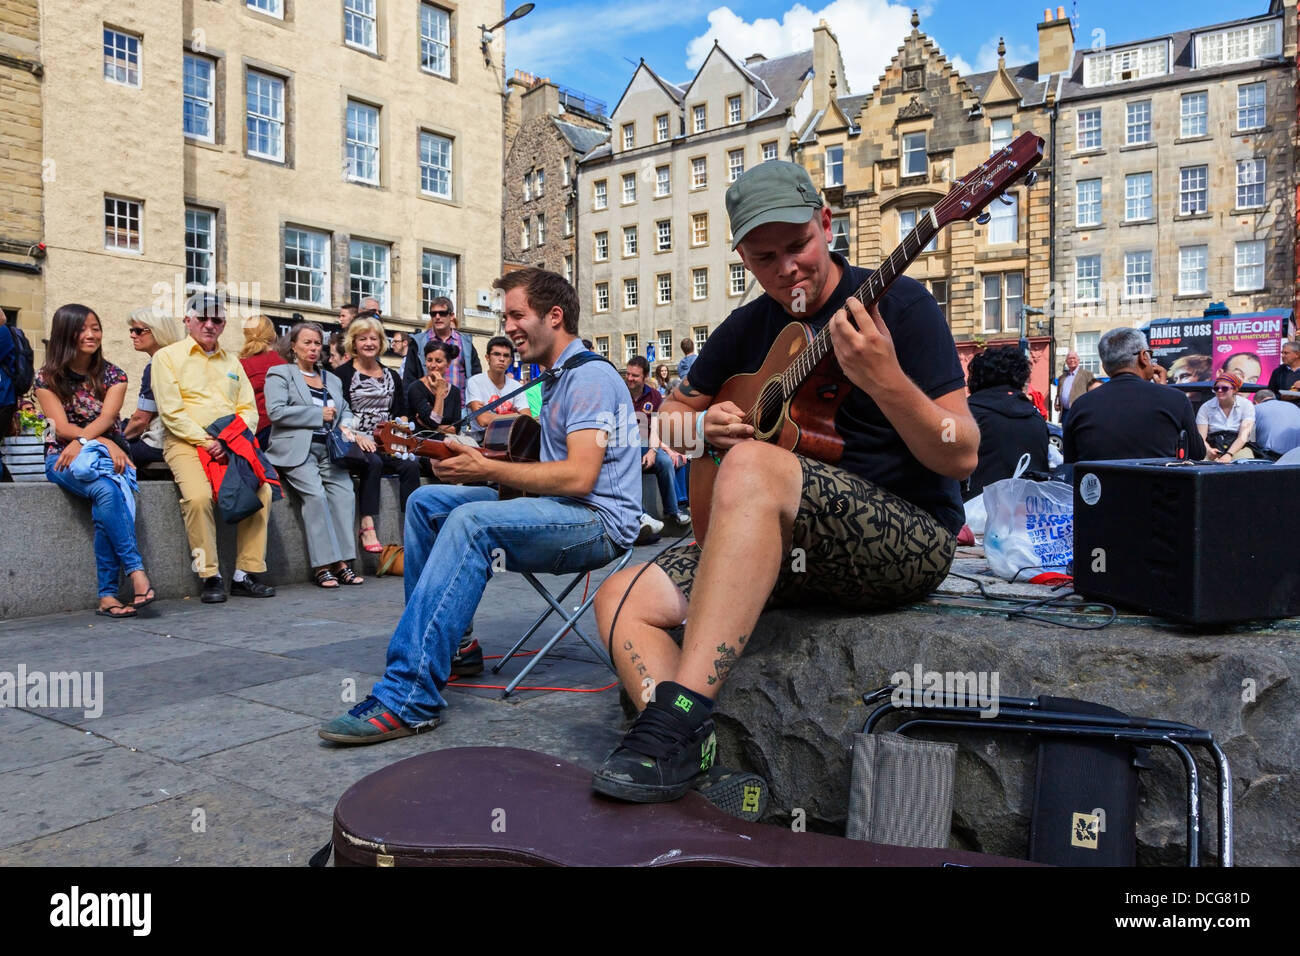 Deux hommes jouant guitares dans Grassmarket, Édimbourg au cours de l'Edinburgh Fringe Festival, Édimbourg, Écosse, Grande-Bretagne Banque D'Images